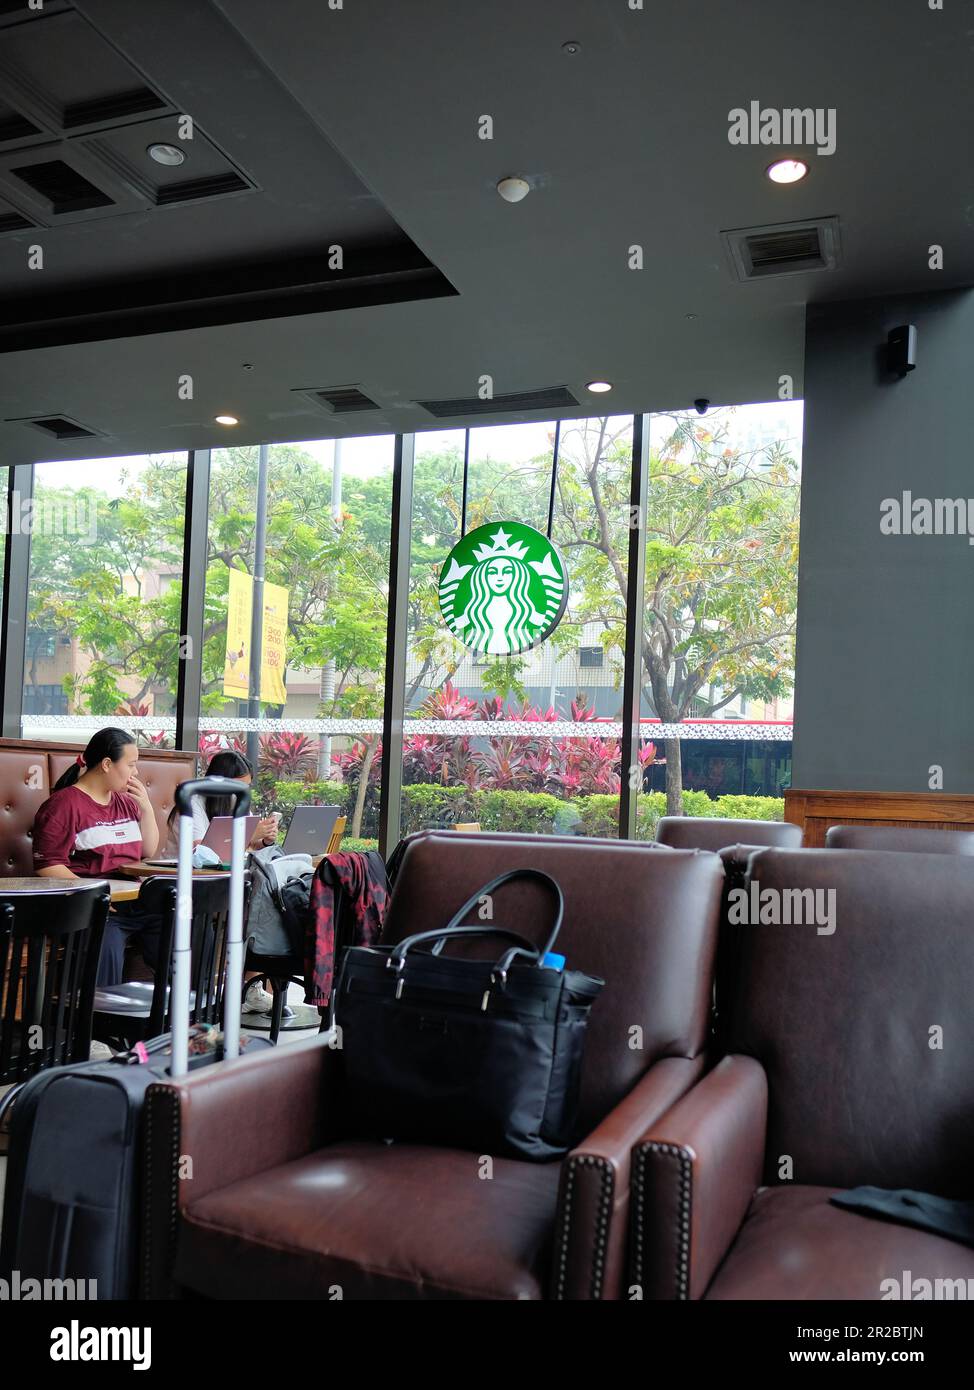 Vista interna Starbucks Coffee Shop, sede a Kaohsiung, Taiwan; studenti che studiano; interessi commerciali americani e investimenti all'estero e in Asia. Foto Stock